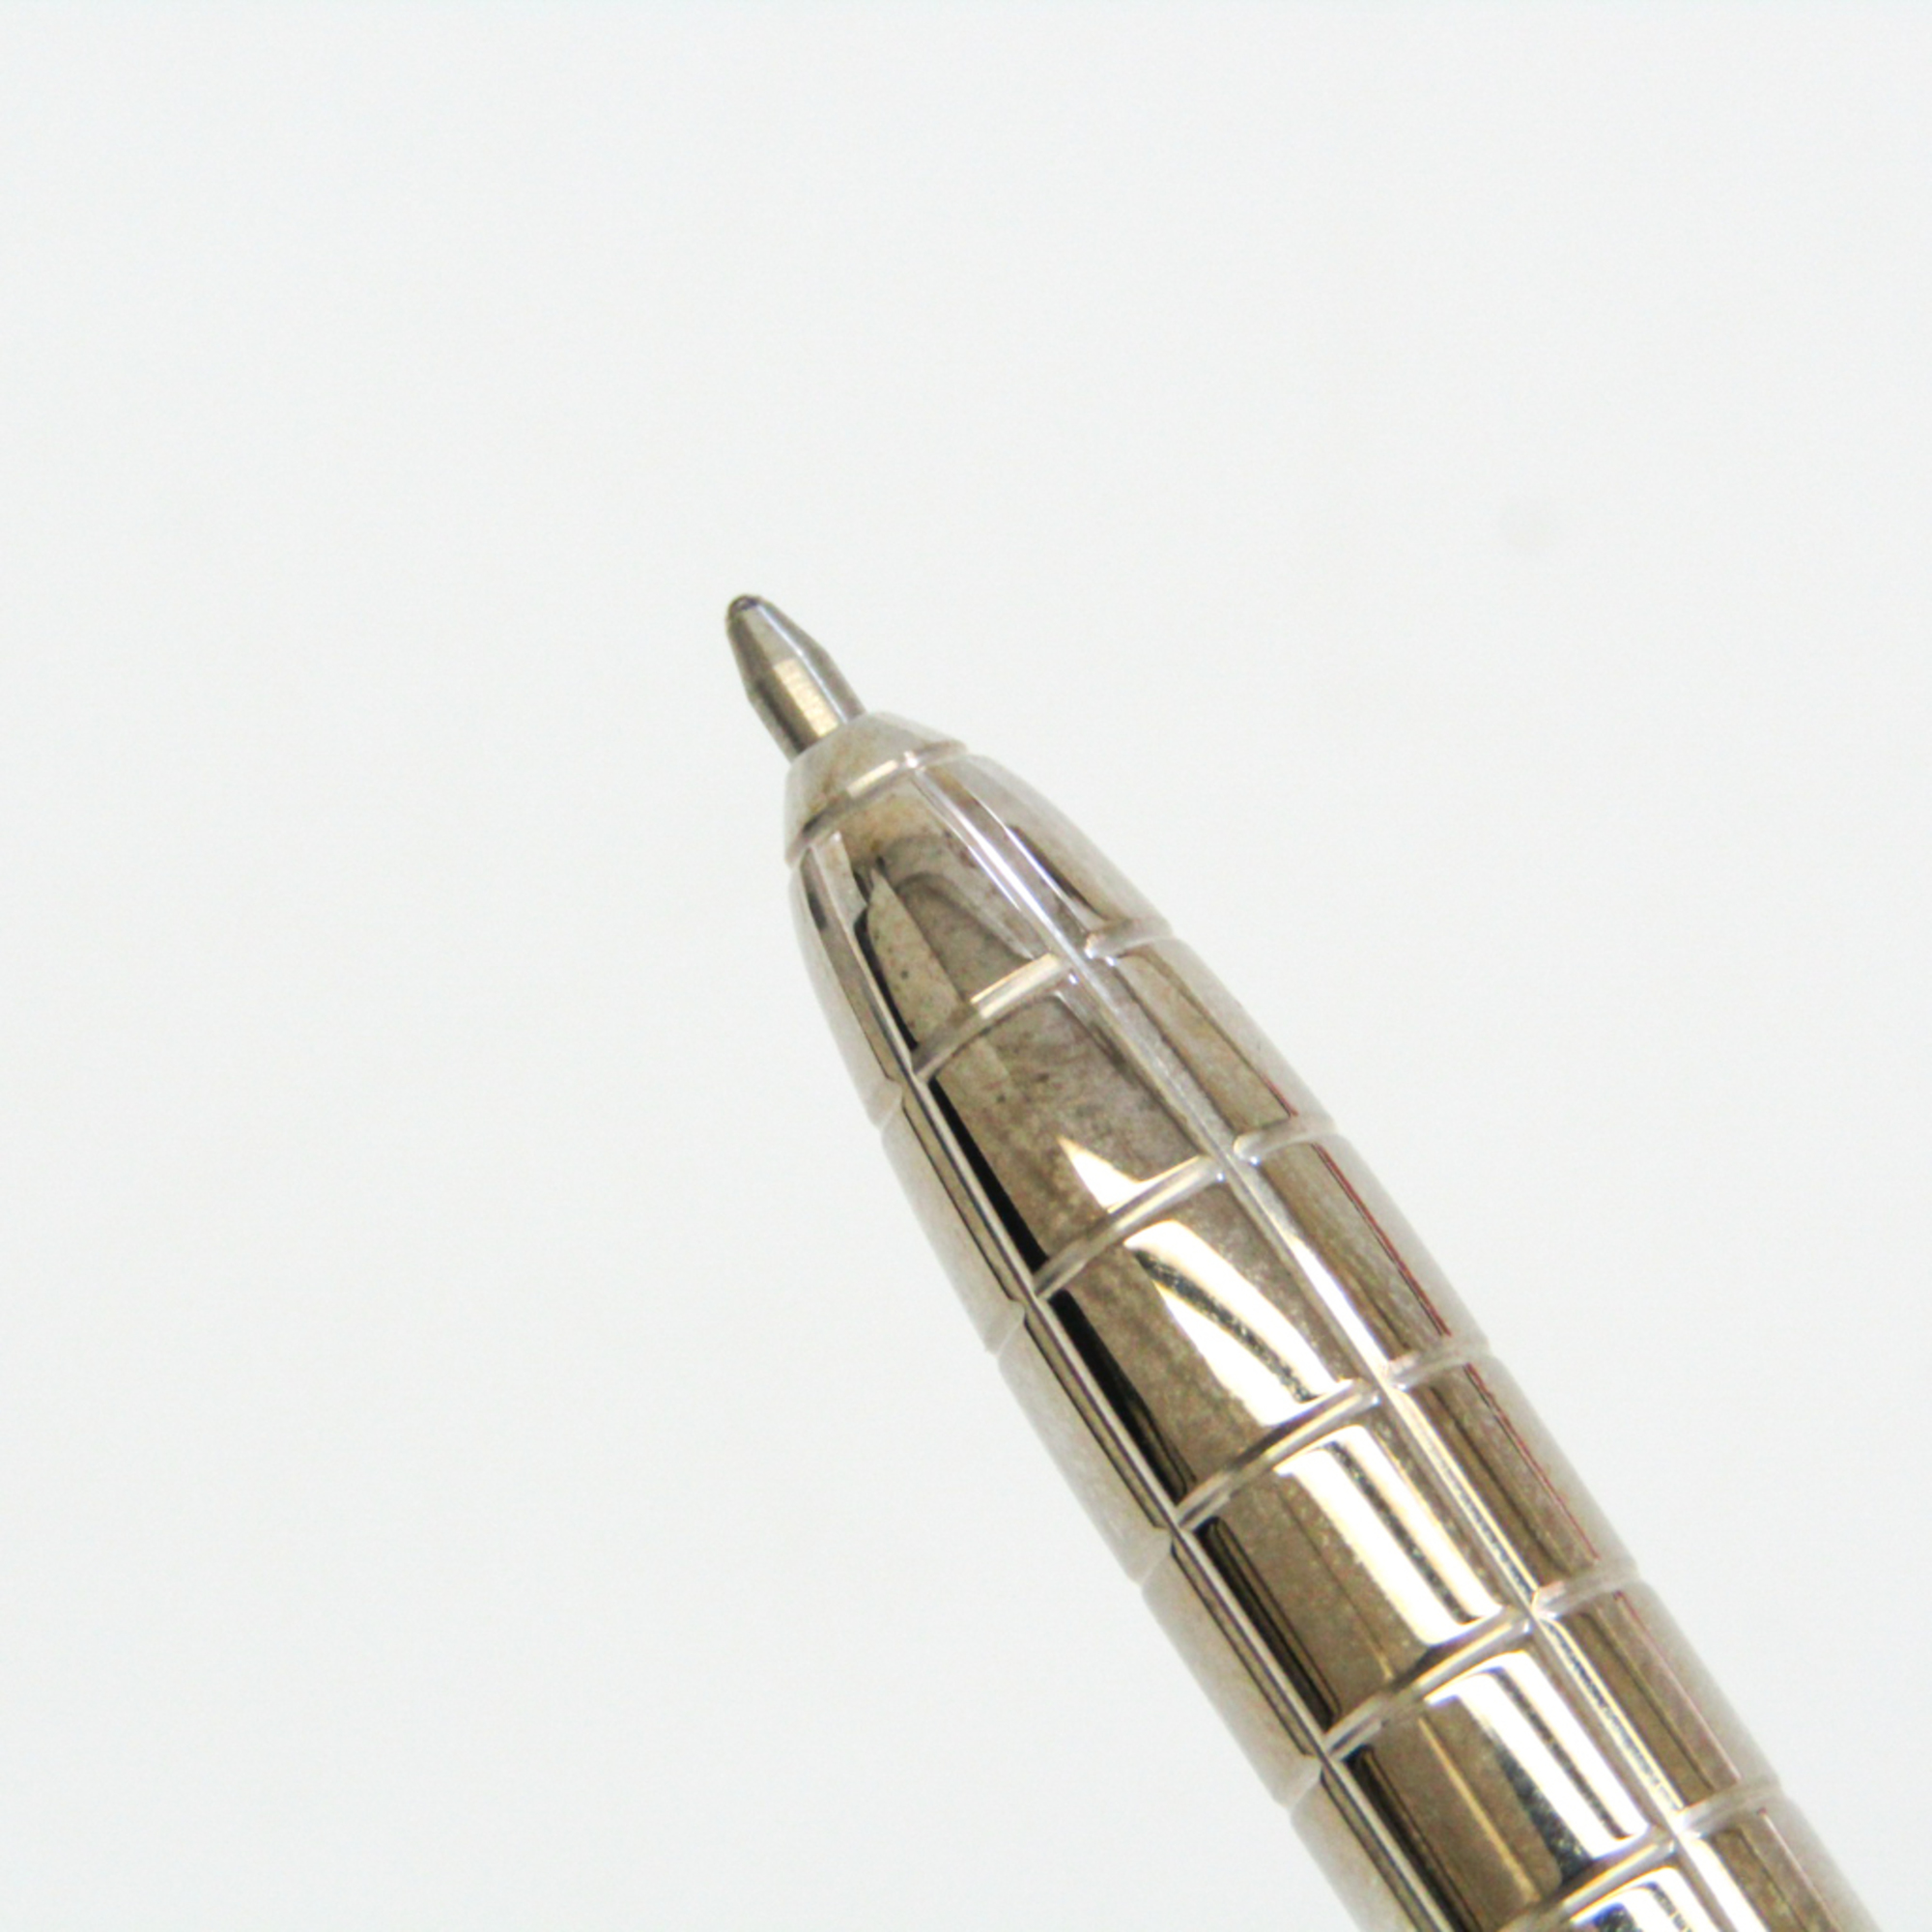 ルイ・ヴィトン(Louis Vuitton) スティロ アジェンダGM N75001 シルバー ボールペン(油性) (ブラックインク)